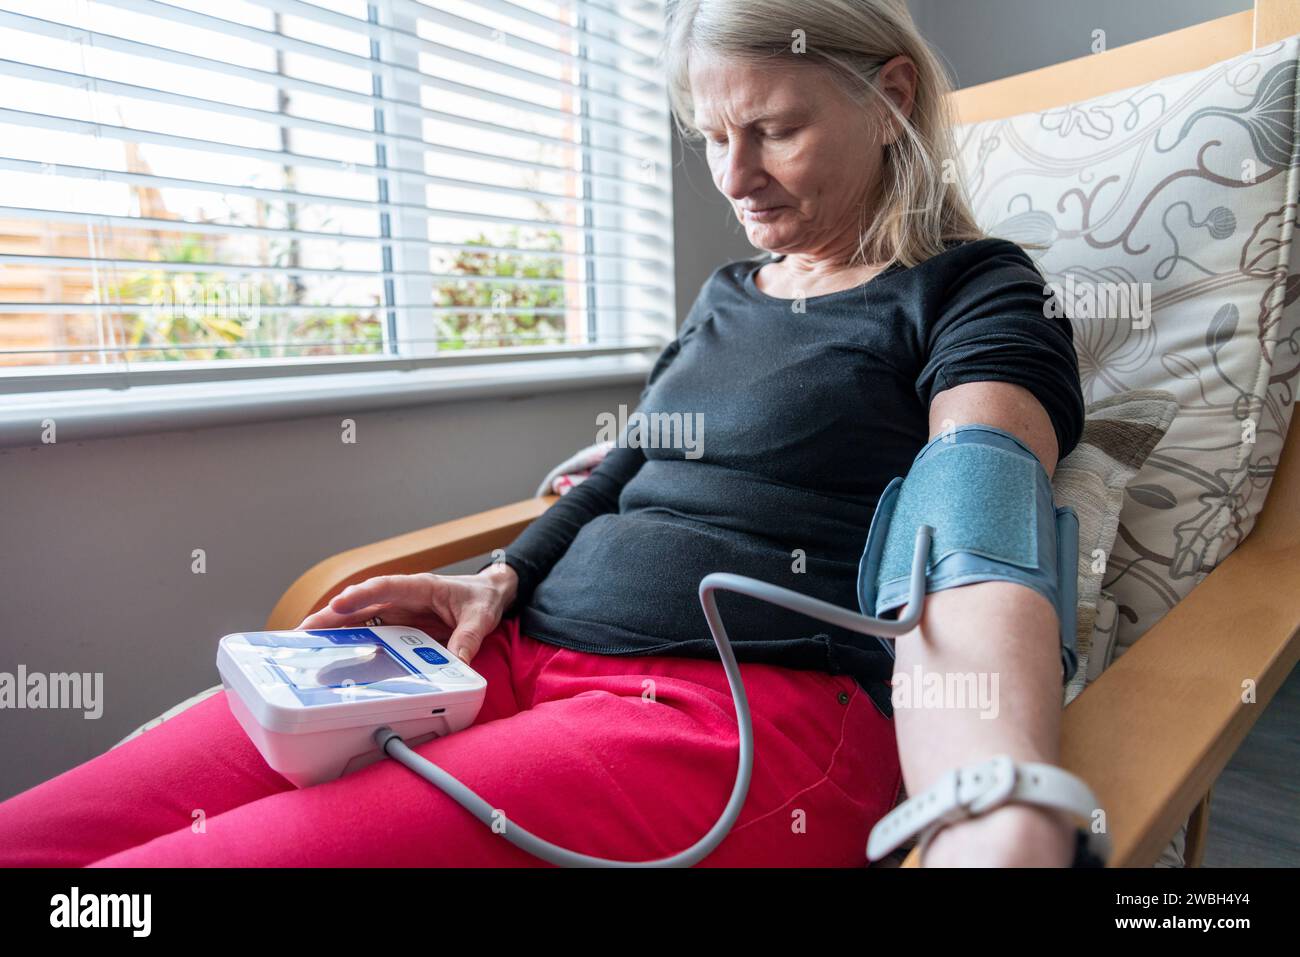 Una donna attenta alla salute, siede su una poltrona, in casa sua, usando un misuratore della pressione sanguigna per autocontrollare le sue condizioni fisiche generali, parte della sua guarigione Foto Stock